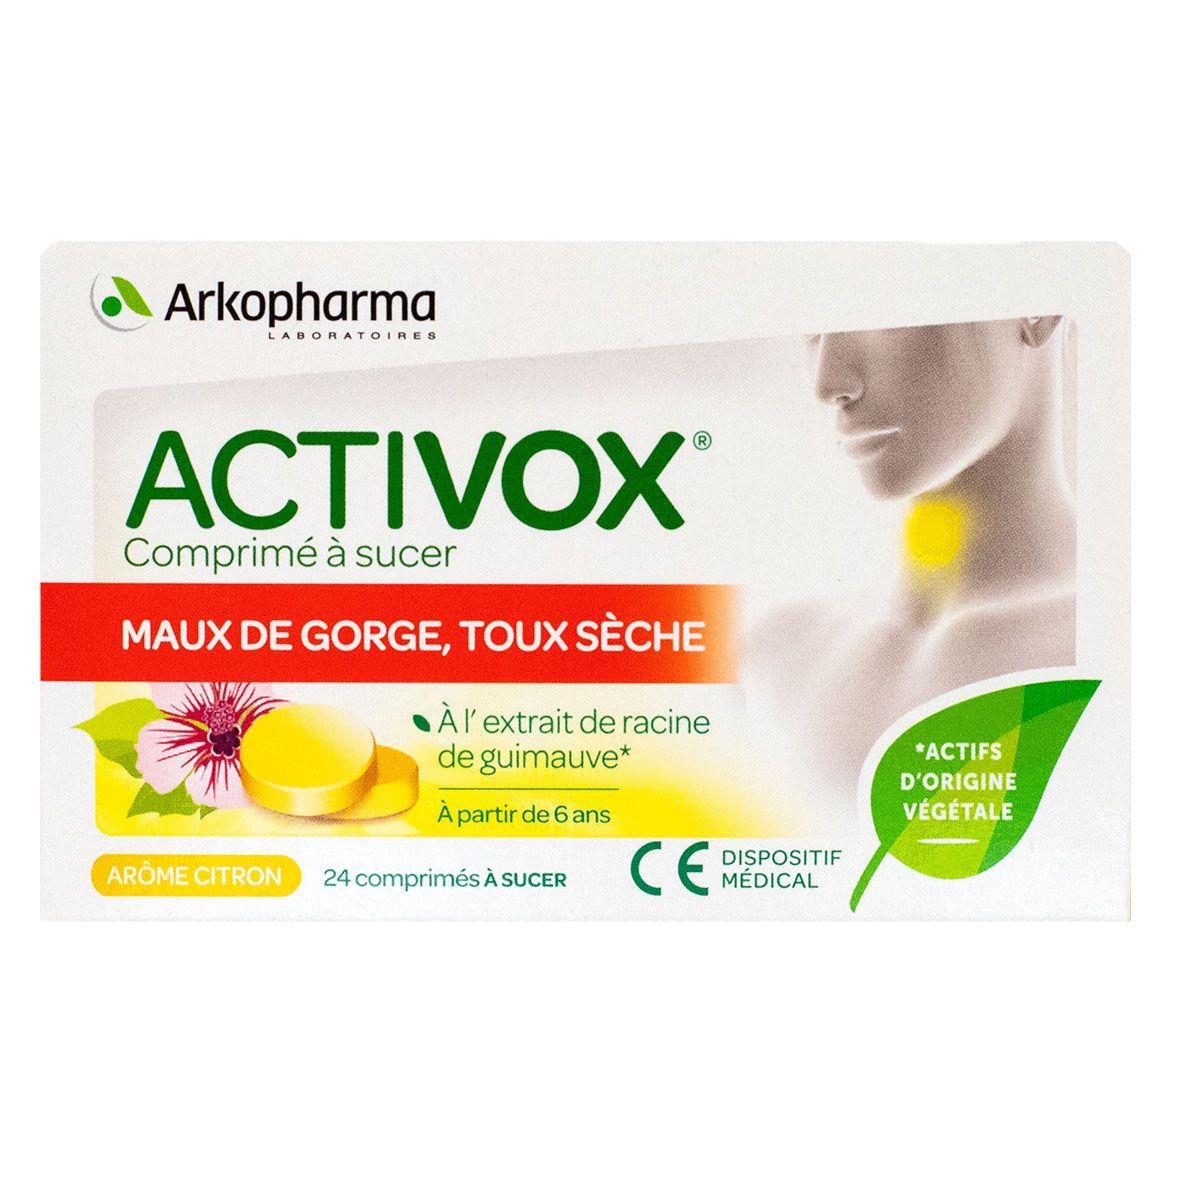 Activox Maux de gorge Toux sèche 24cpr Citron Akopharma - Nez & Gorge